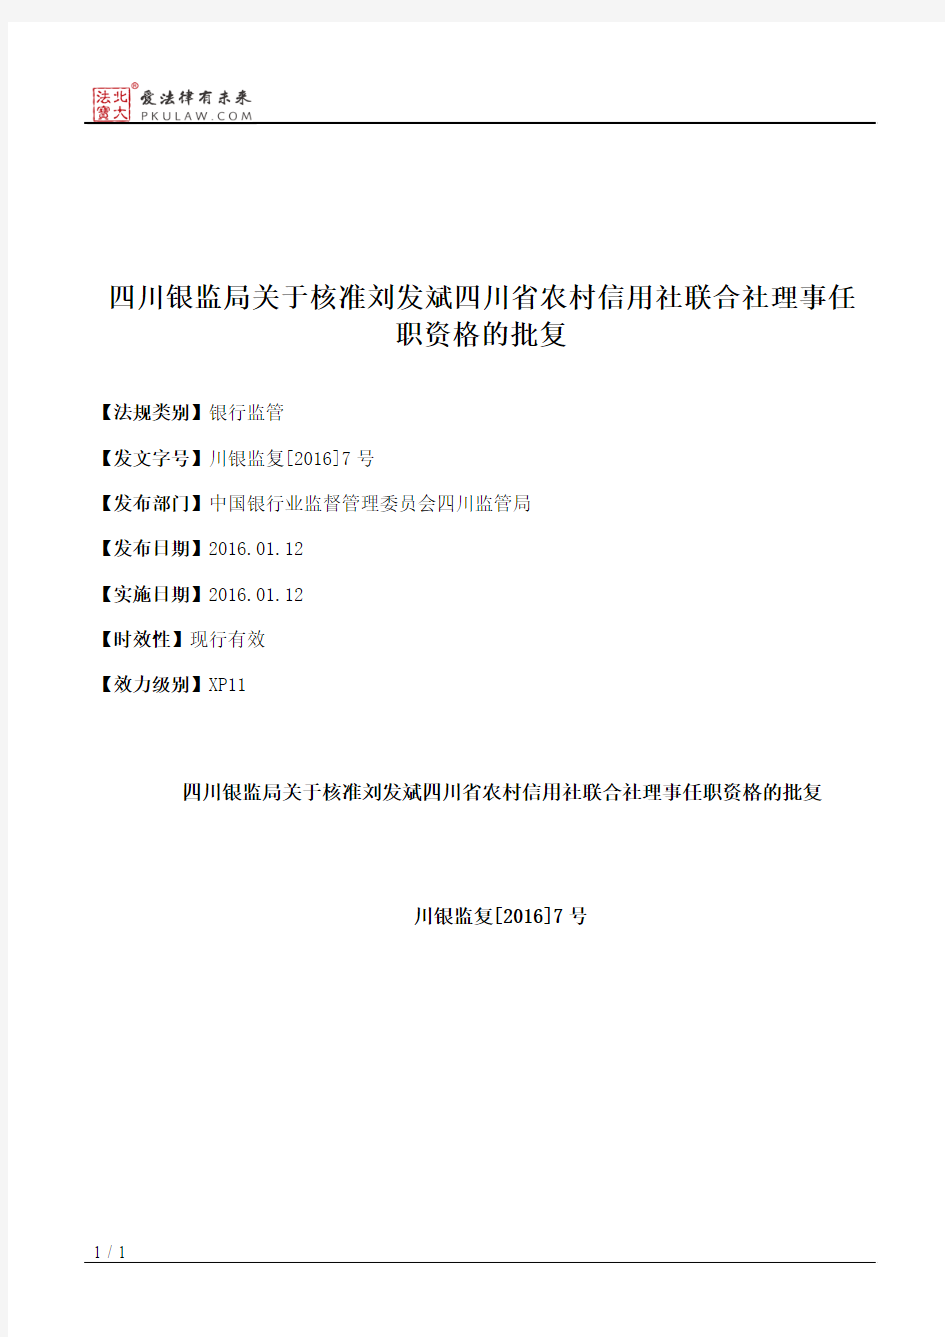 四川银监局关于核准刘发斌四川省农村信用社联合社理事任职资格的批复